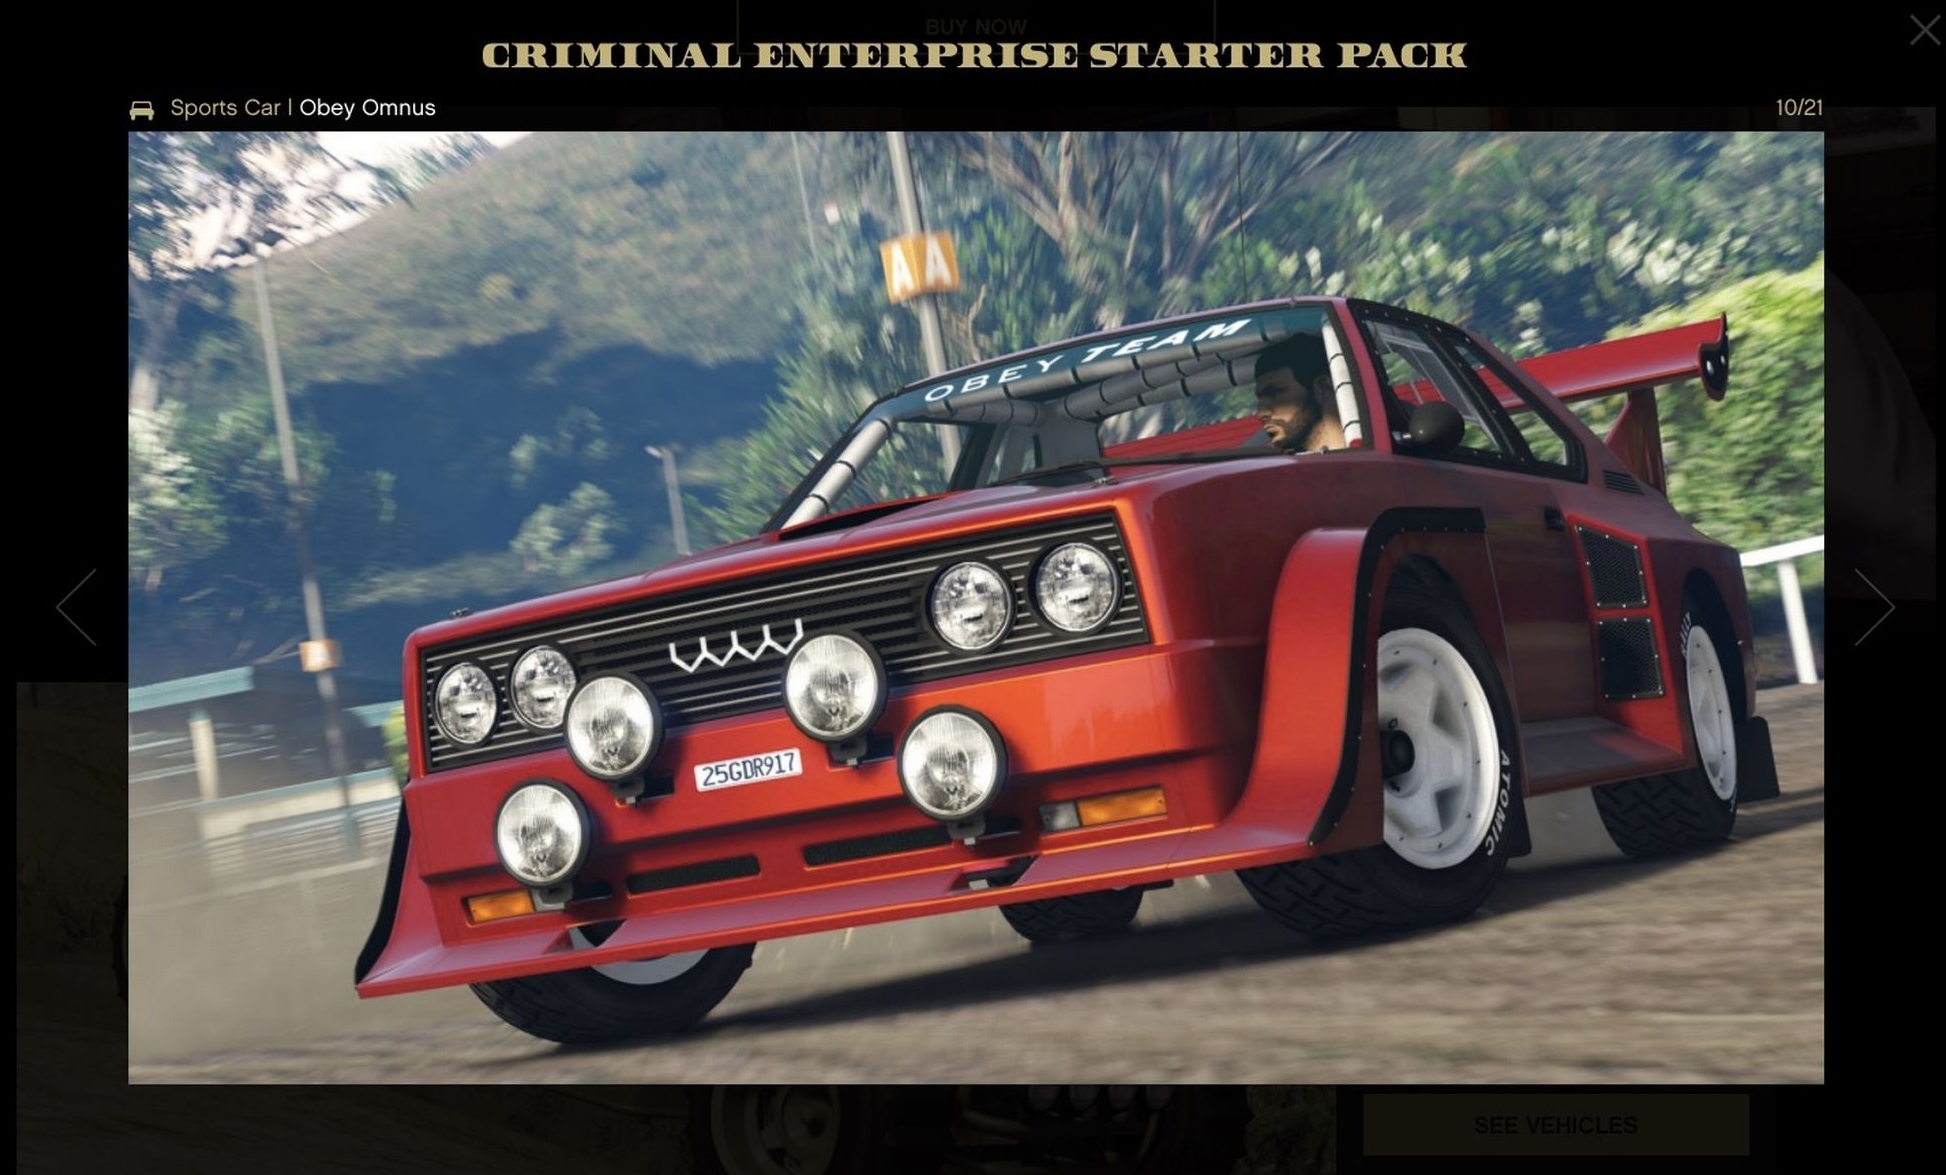 How to claim GTA Online's bonus Criminal Enterprise starter pack